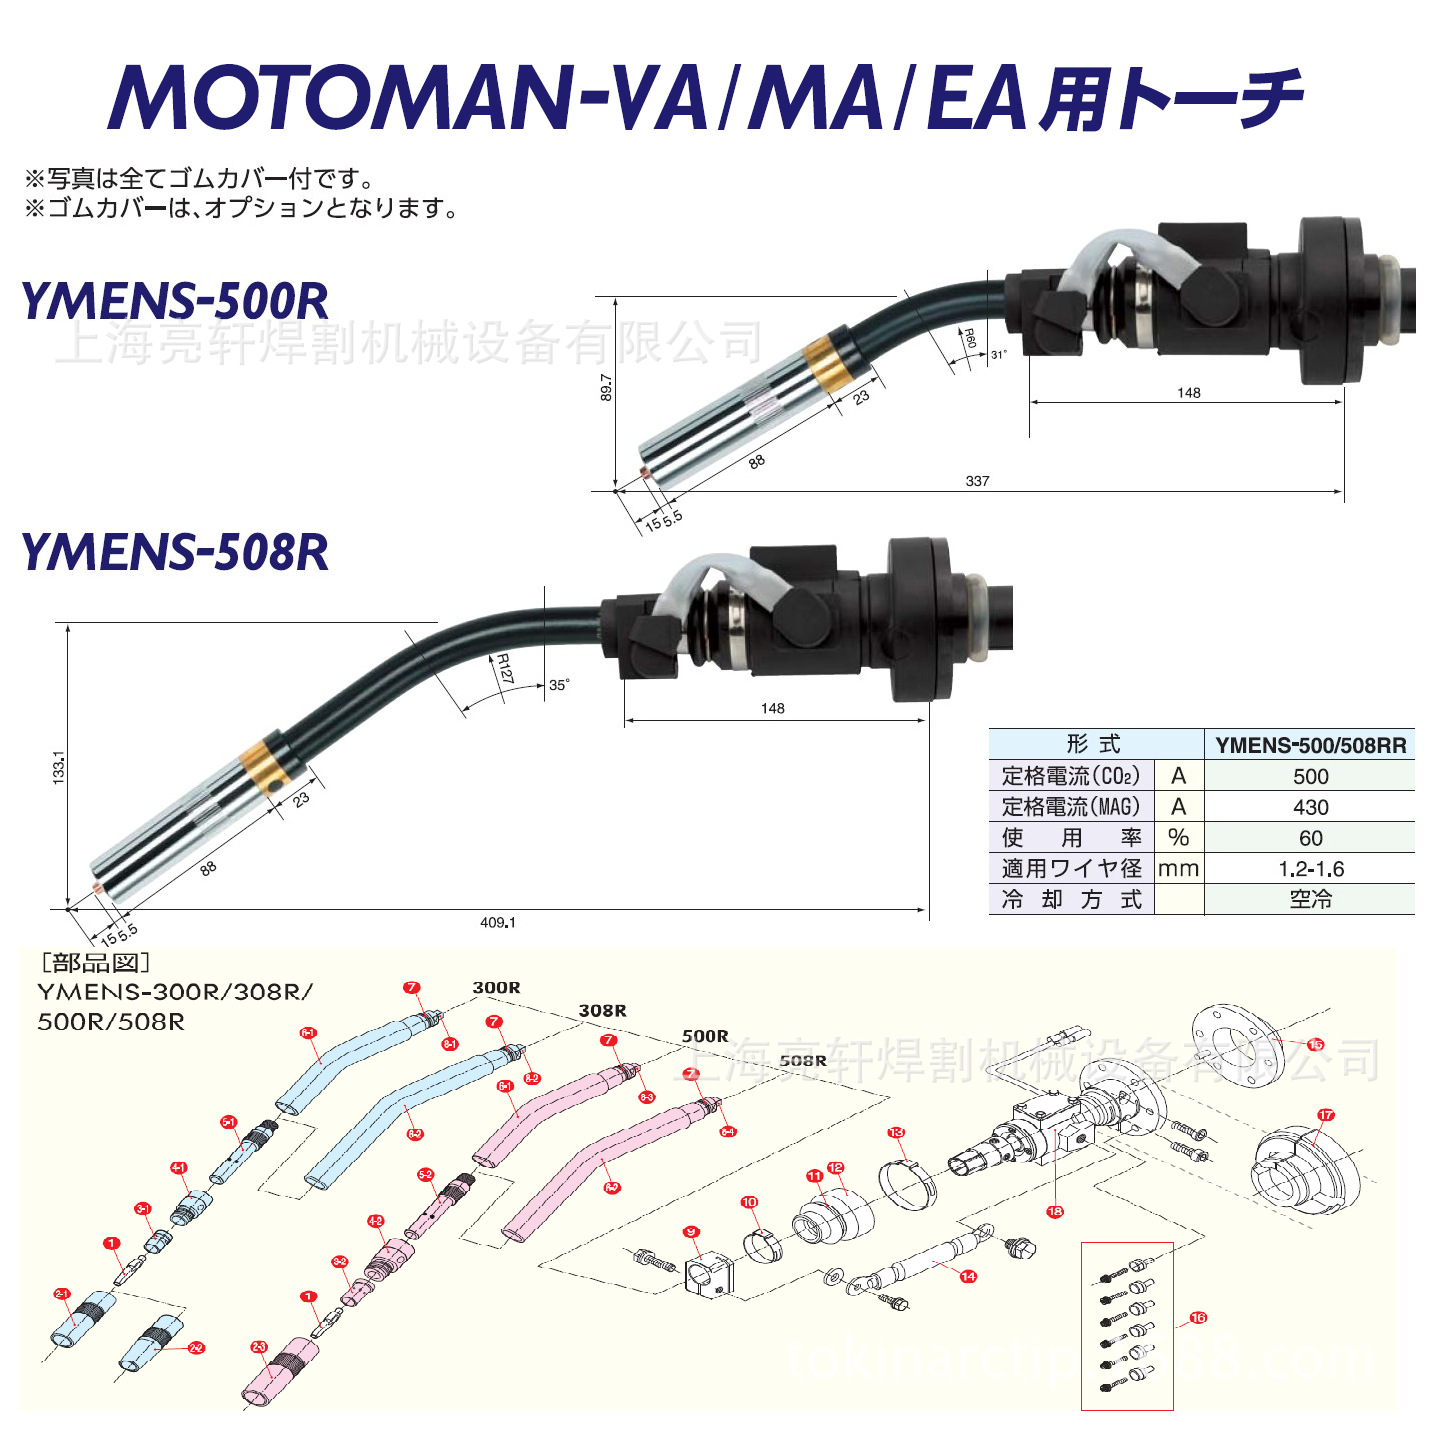 YMENS-500R/508R原装 日本TOKINARC安川机器人焊枪产品代码/型号